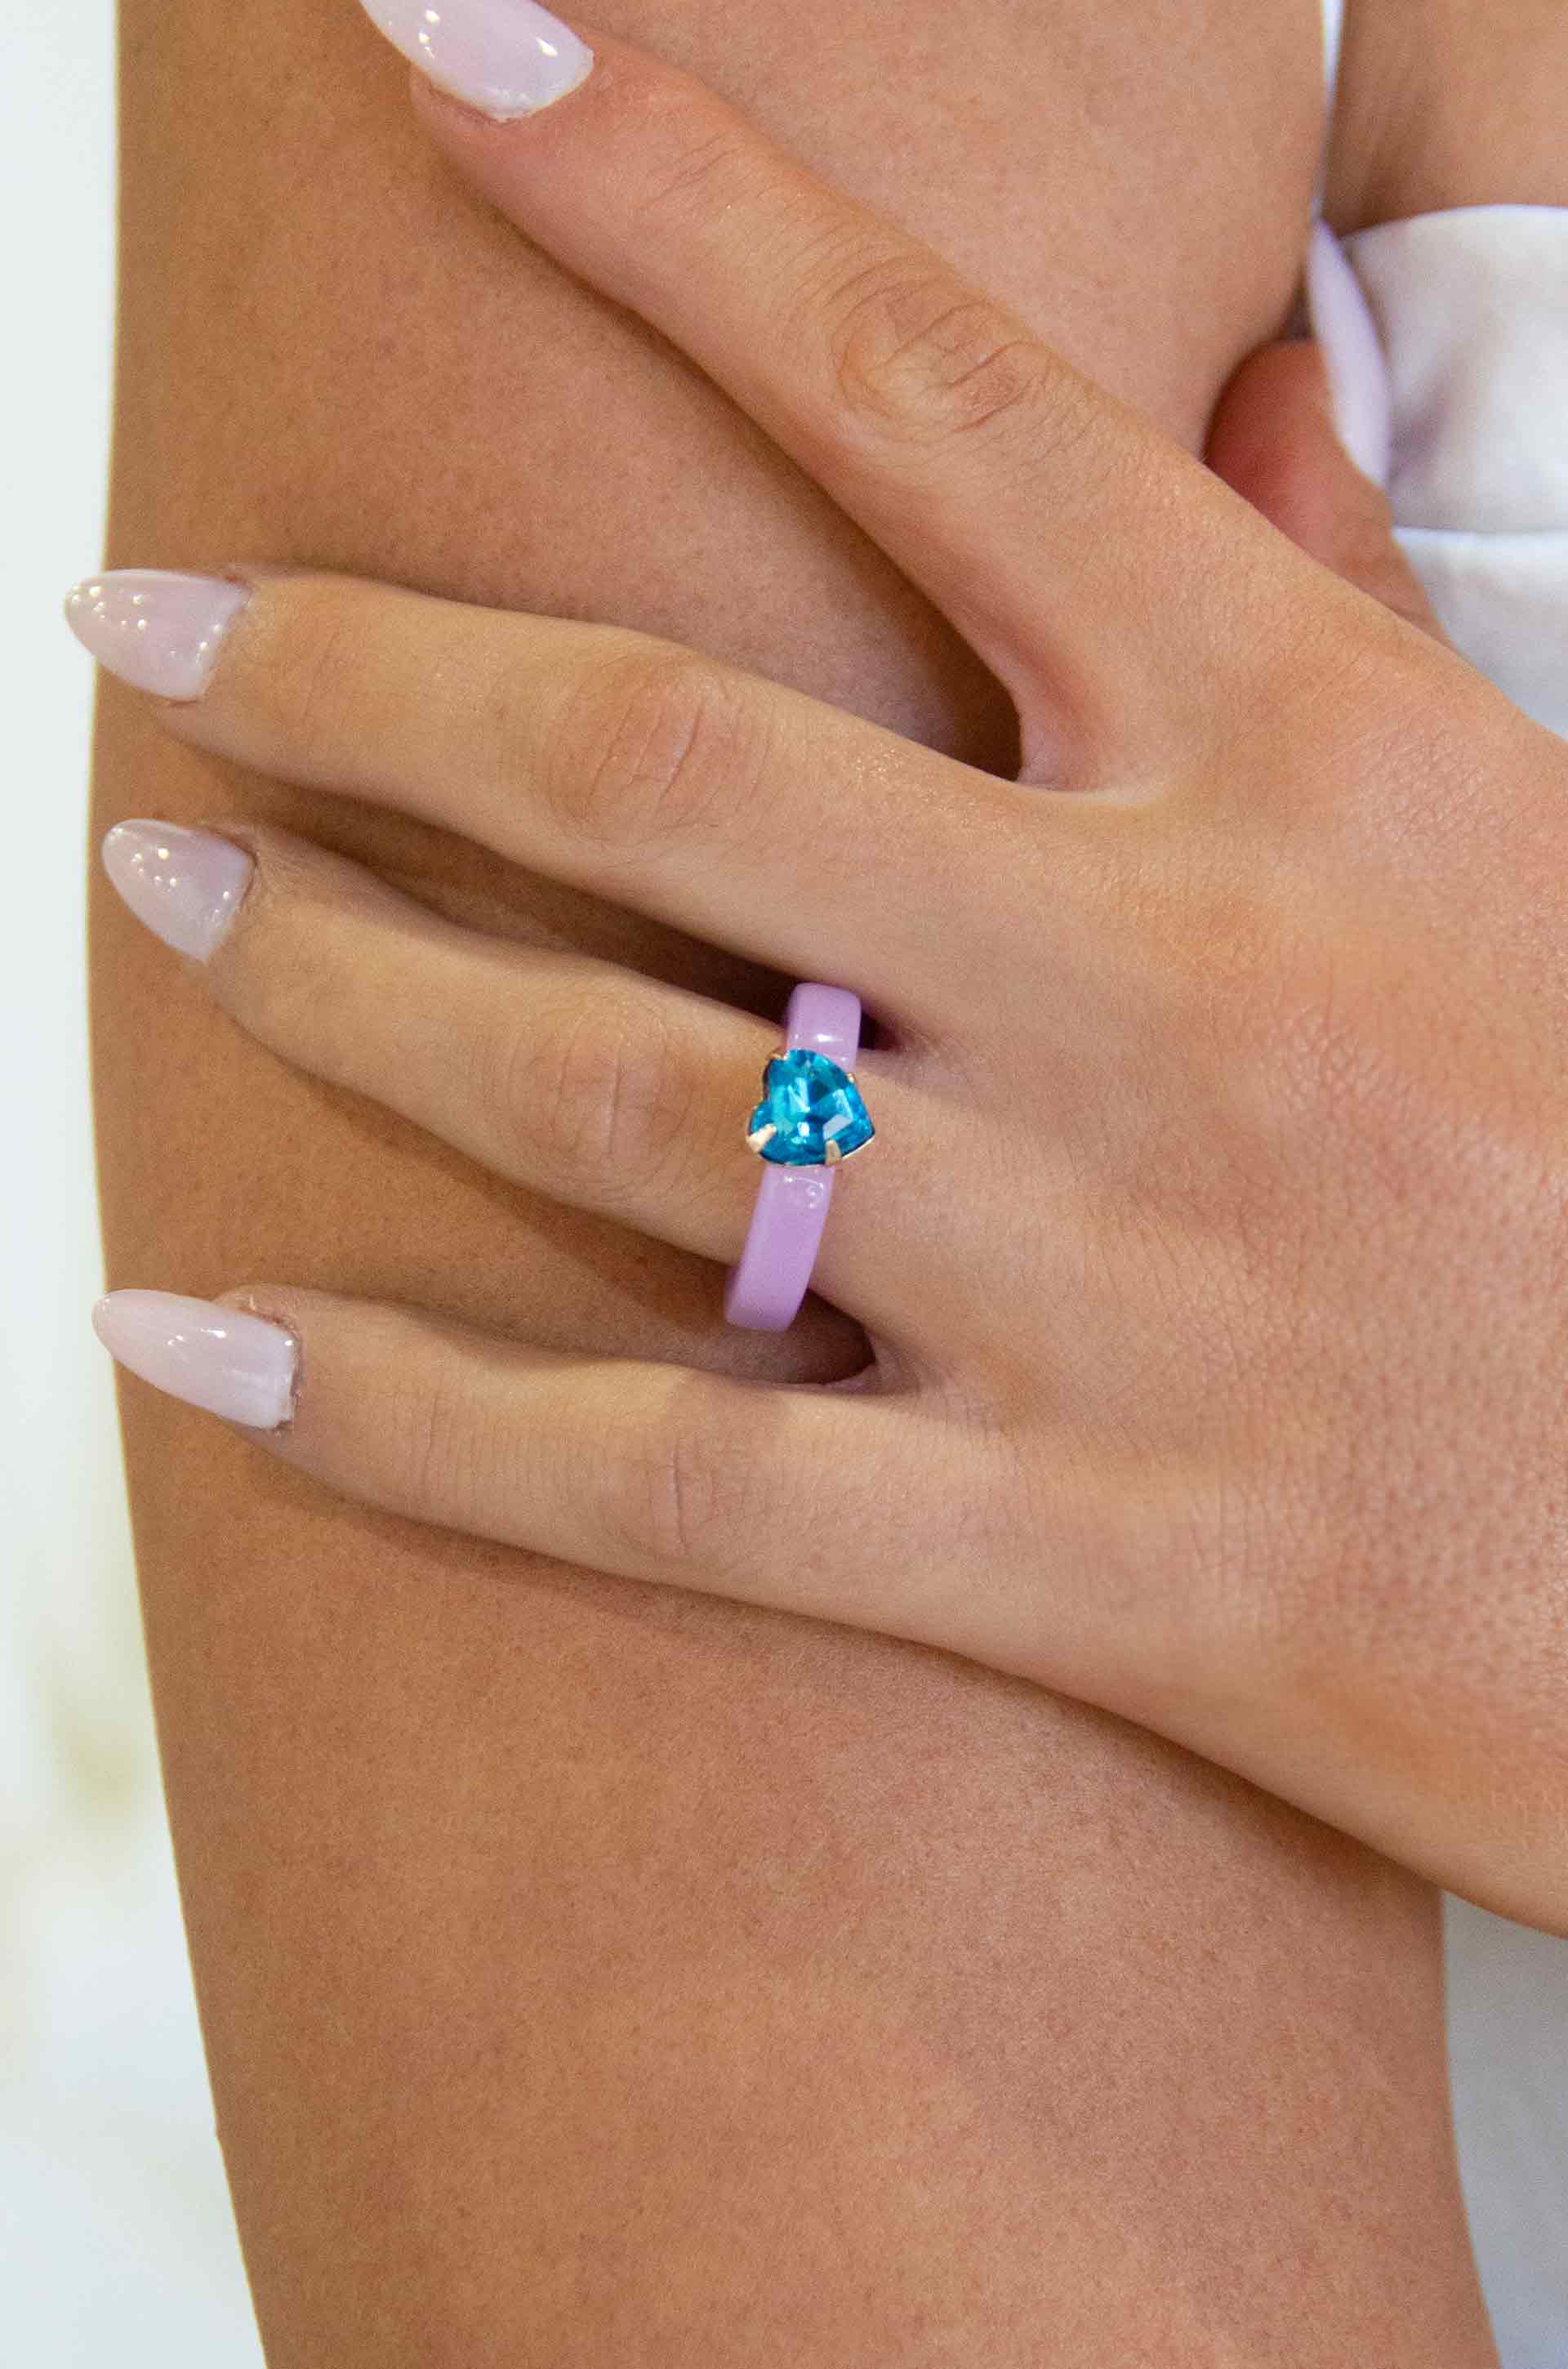 Lovely Resin Crystal Heart Ring on a model